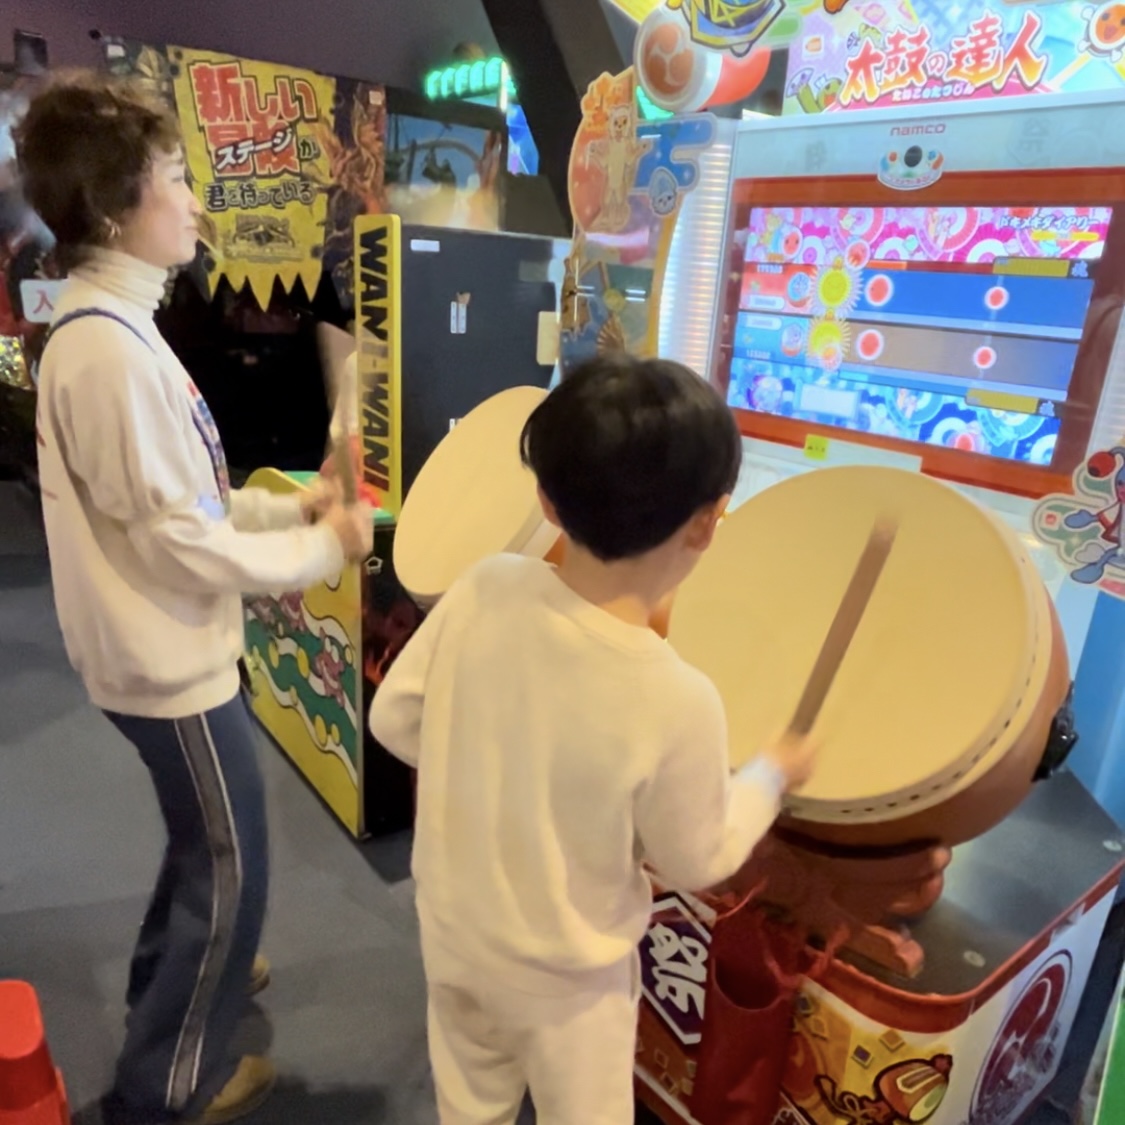 スポッチャダイバーシティ東京プラザ店。ゲームで遊ぶママと息子。